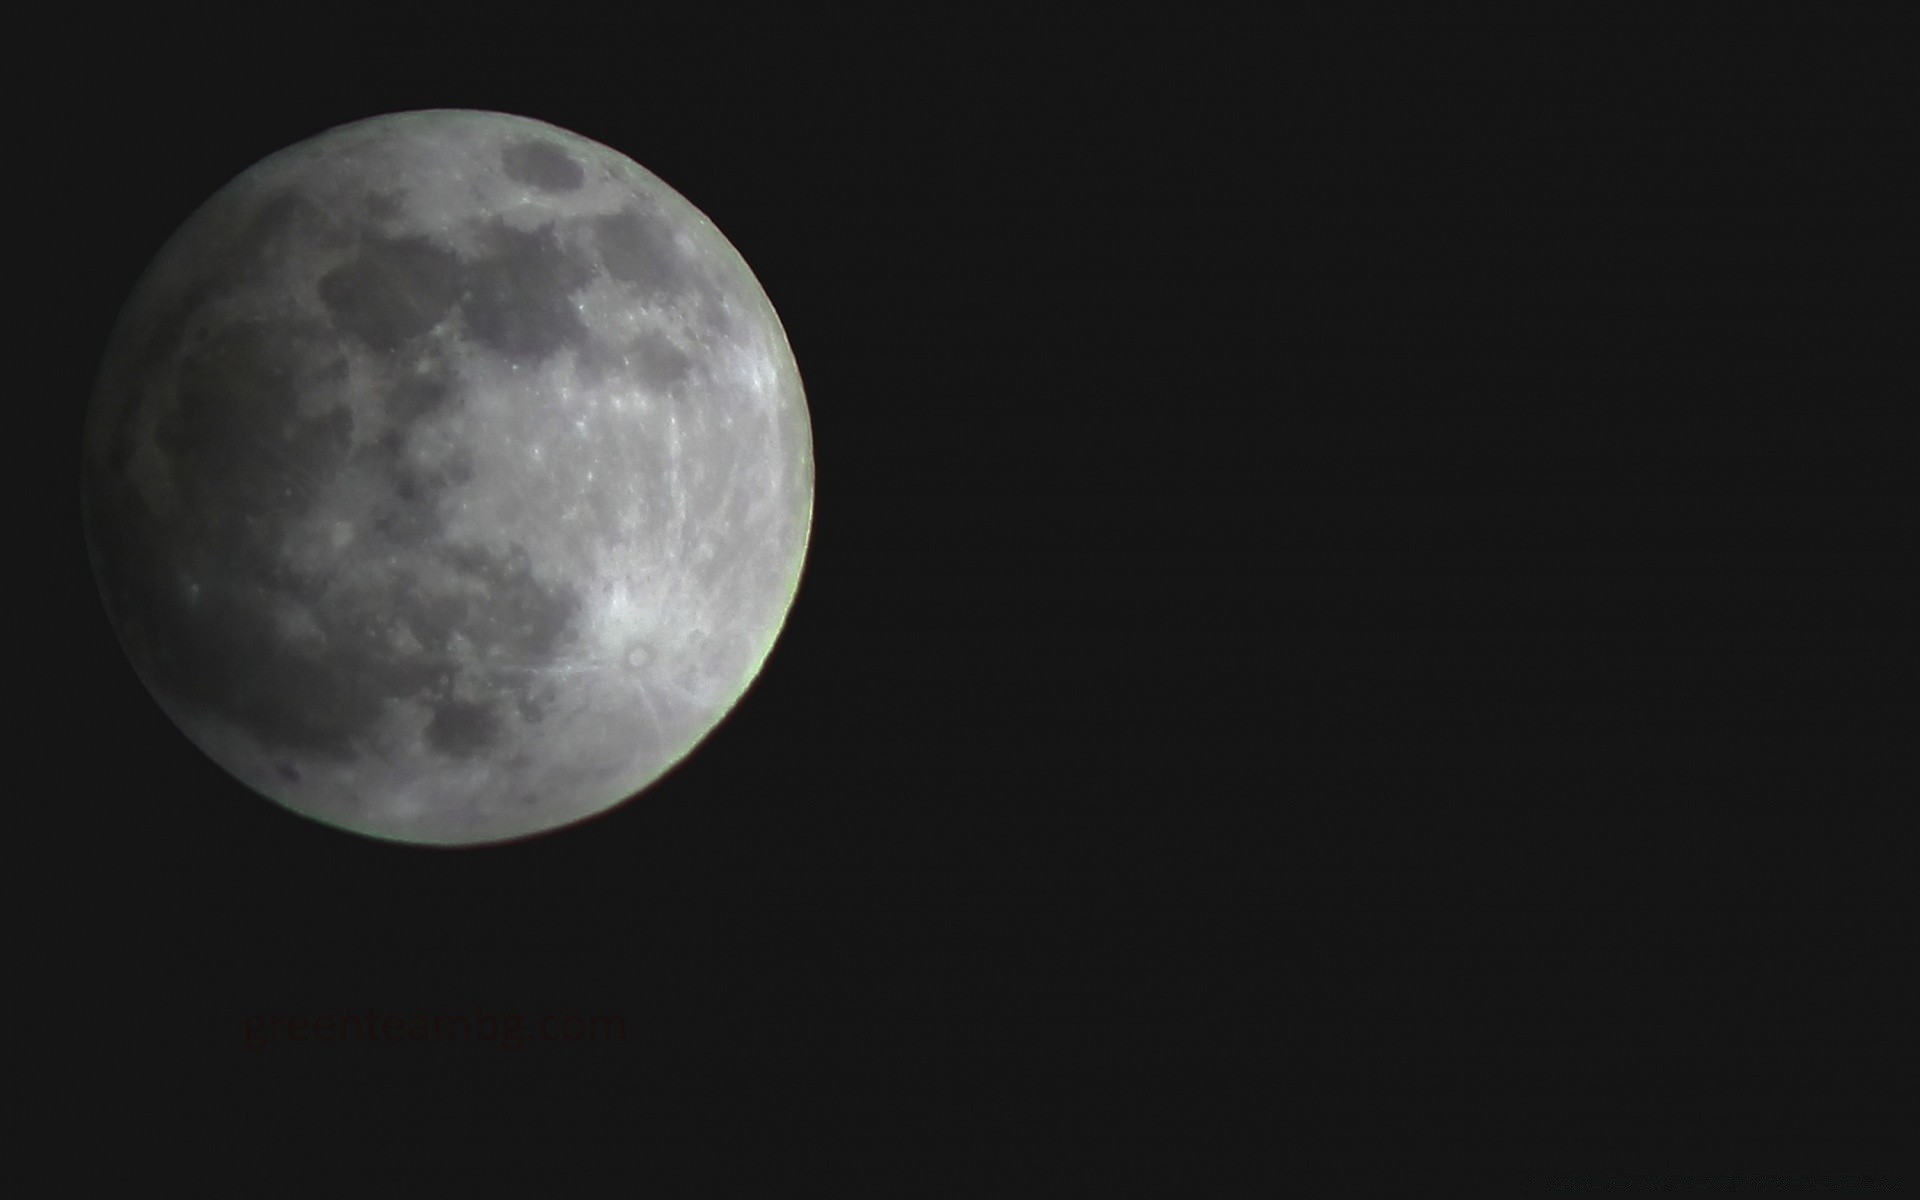 небо луна астрономия луна затмение небо лунный кратер полная луна планеты темный пространство аполлон полумесяц астрология сфера телескоп спутниковое